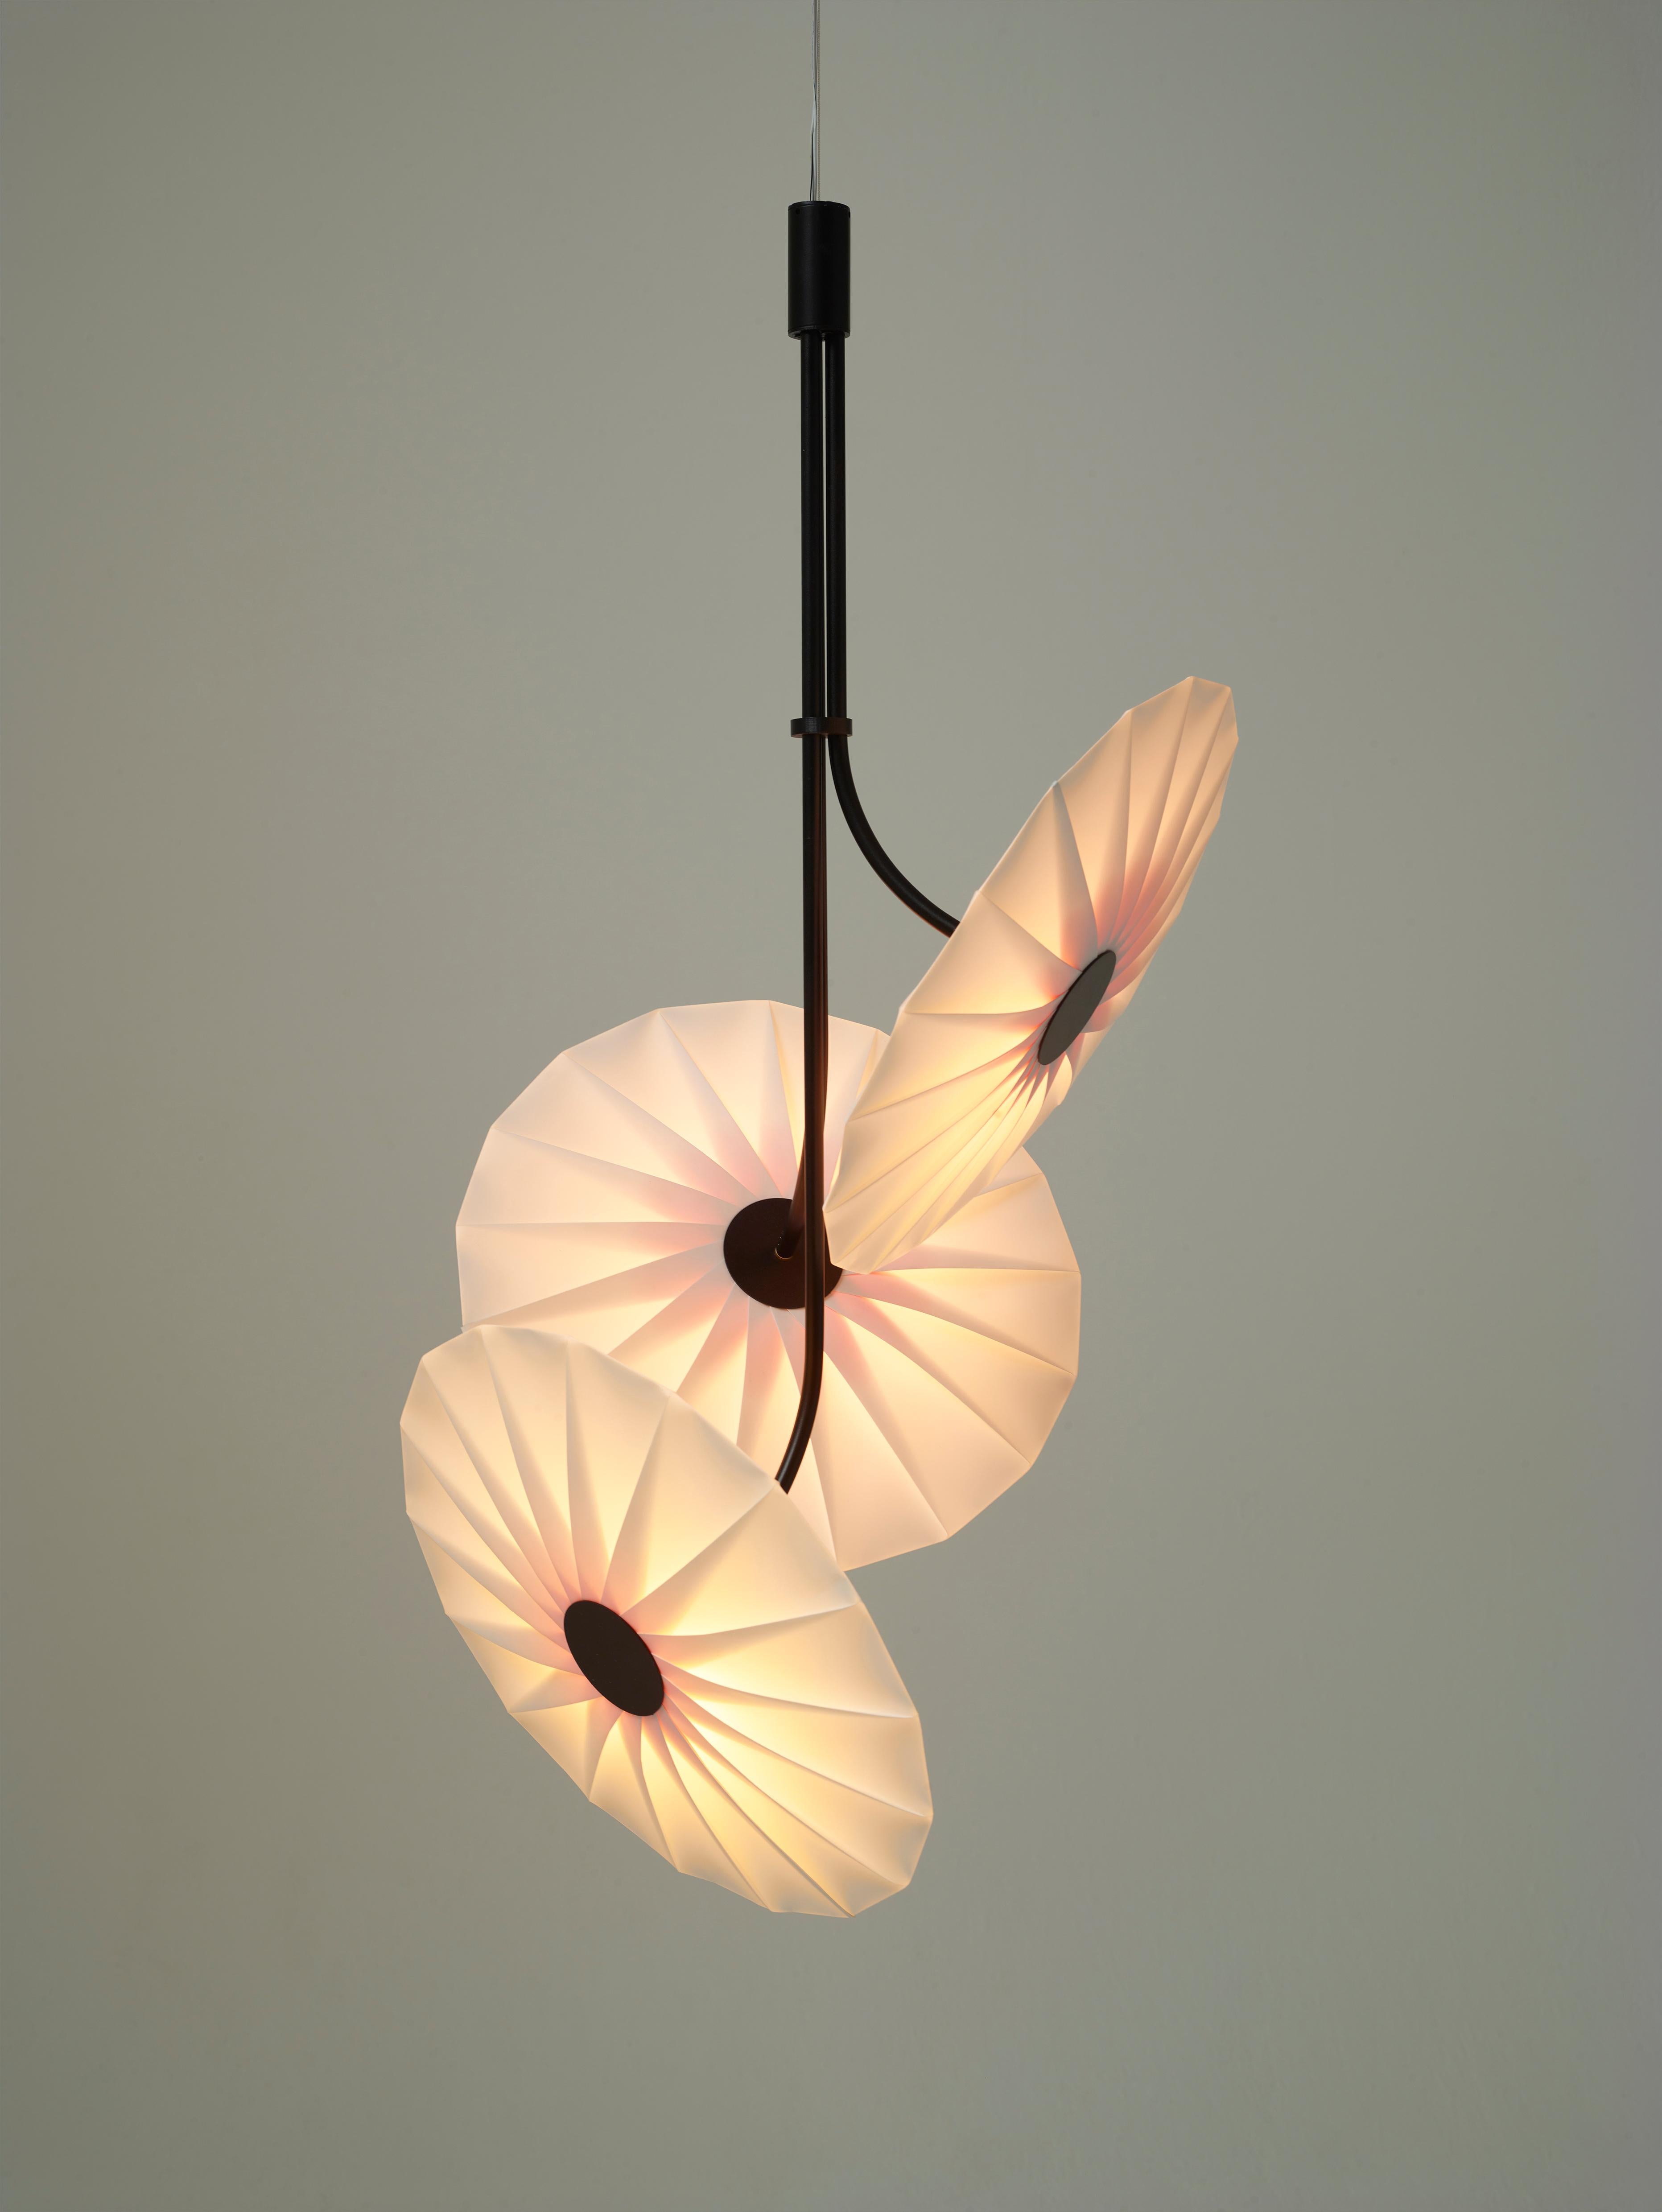 La collection de luminaires Bloom est conçue par le Studio Umut Yamac et fabriquée à la main dans leur studio londonien. 

S'inspirant des fleurs de printemps, les lampes Bloom sont une collection limitée de lampes en origami fabriquées à la main.